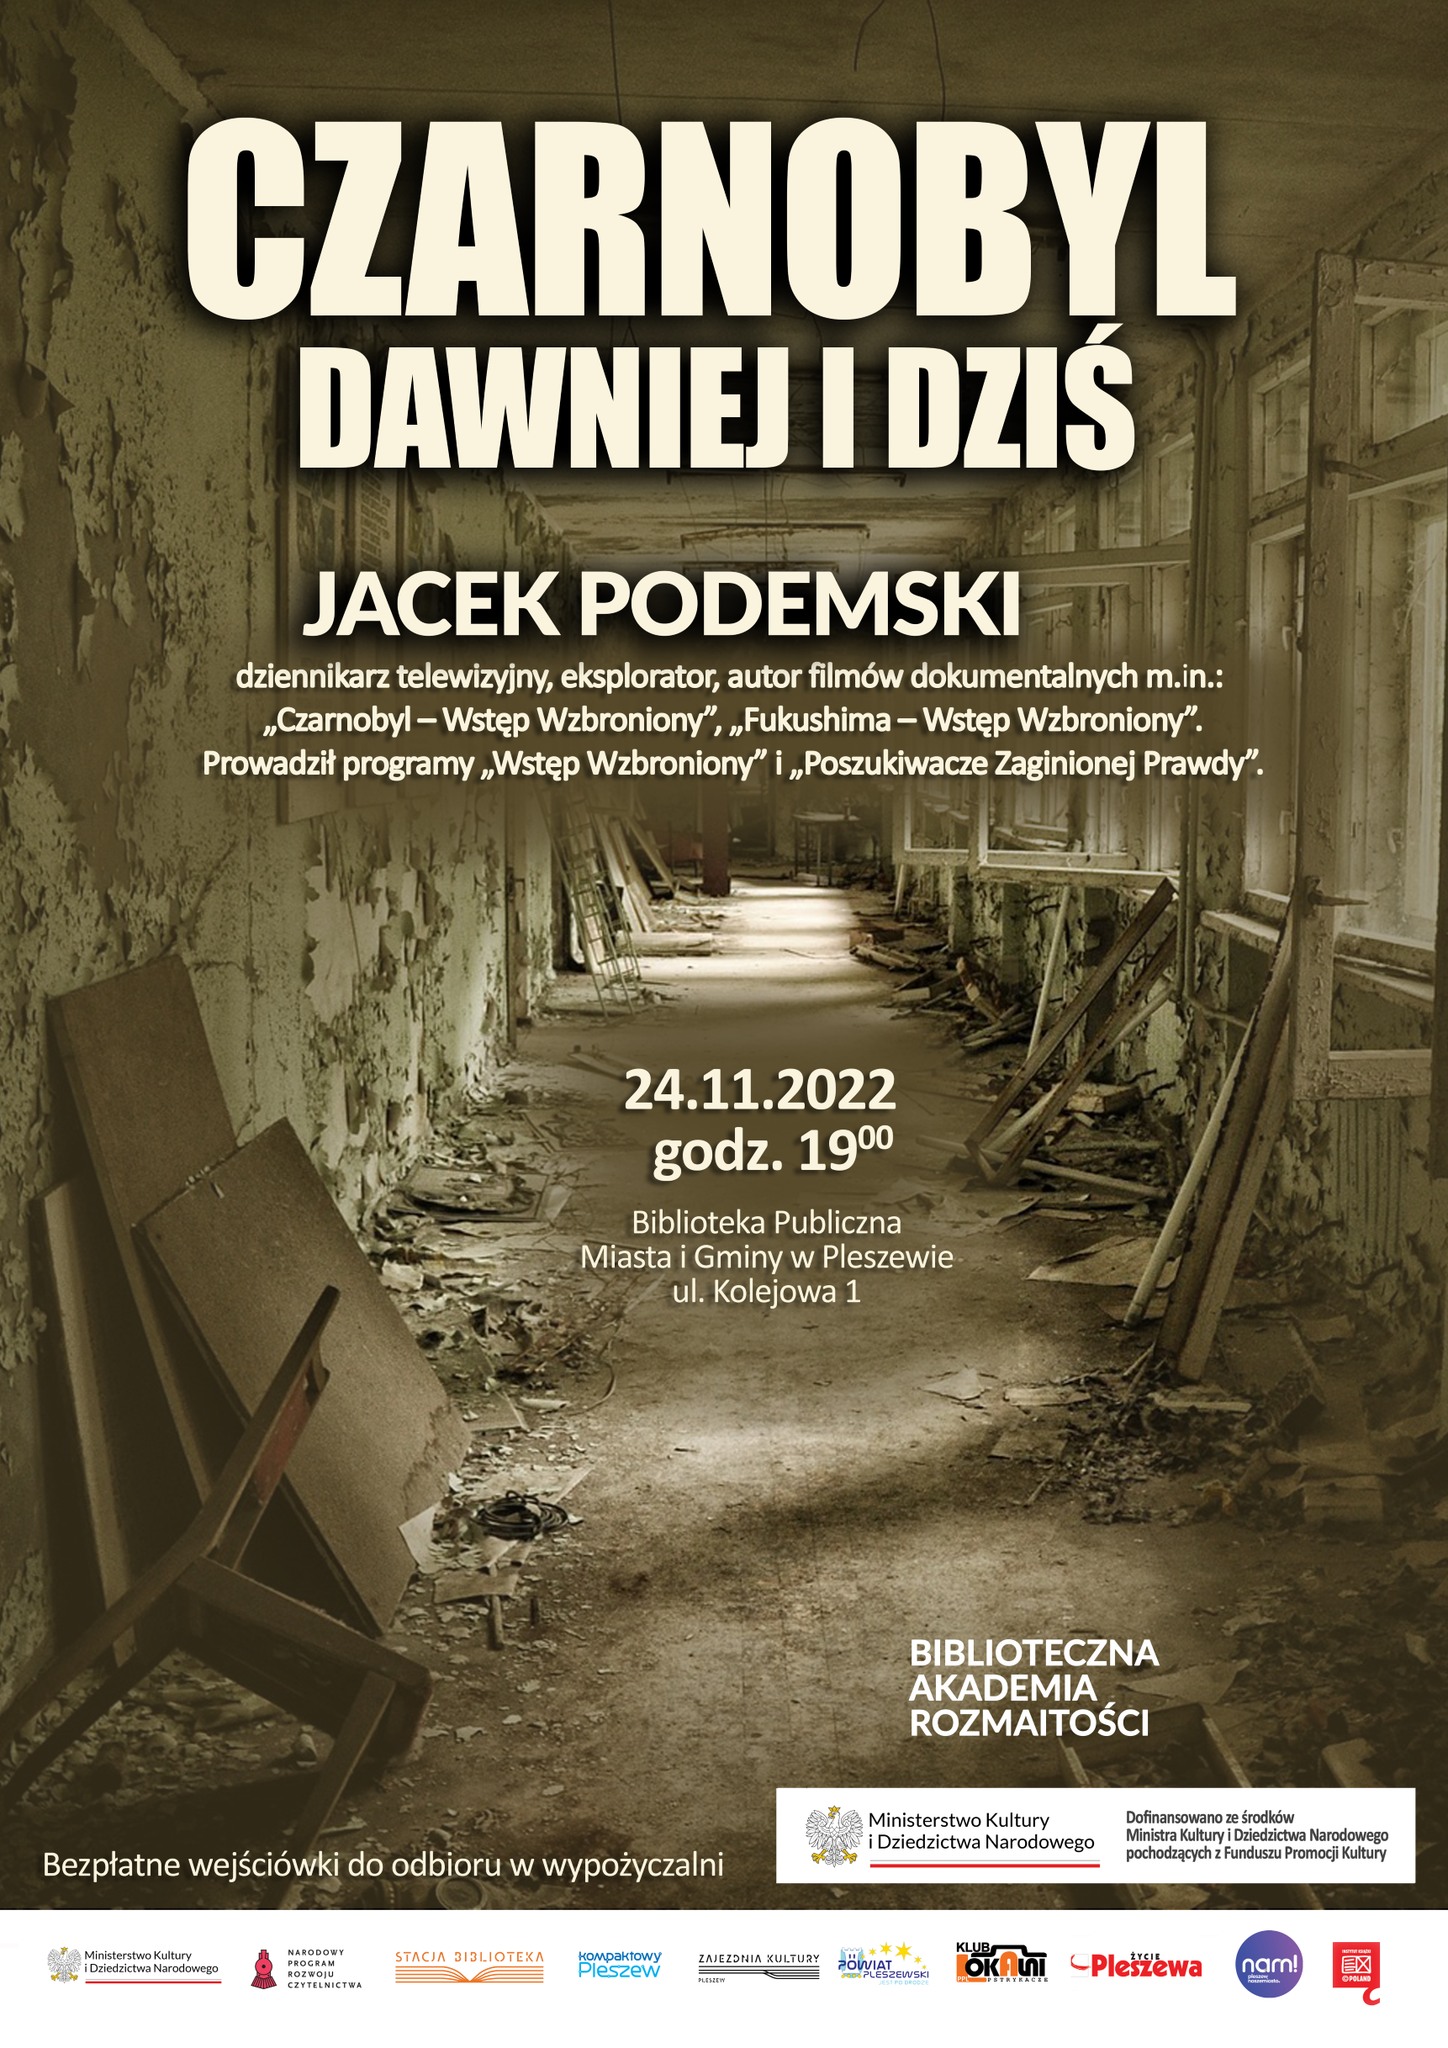 Plakat wydarzenia w Bibliotece Publicznej Czarnobyl dawniej i dziś odbywającego się 24 listopada 2022 o godzinie 19:00